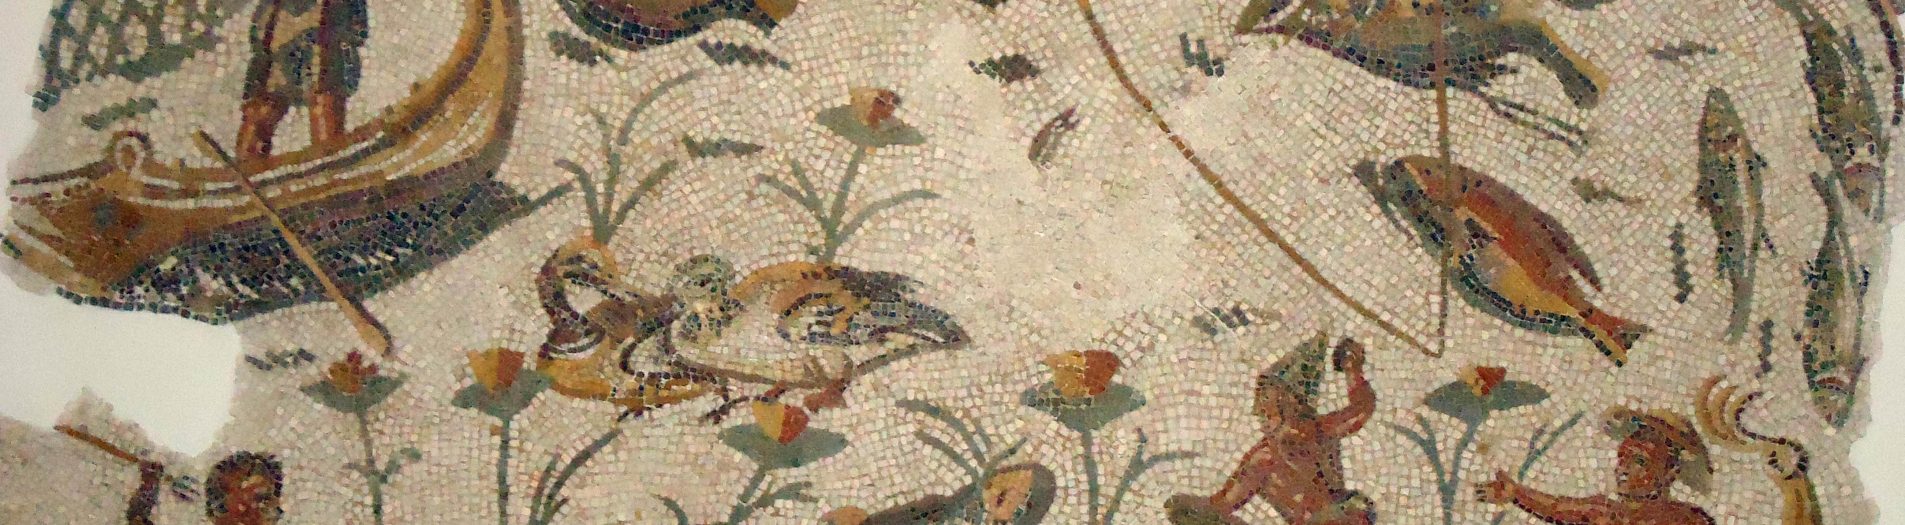 Les paysages nilotiques dans la mosaïque africaine de la période romaine en Tunisie